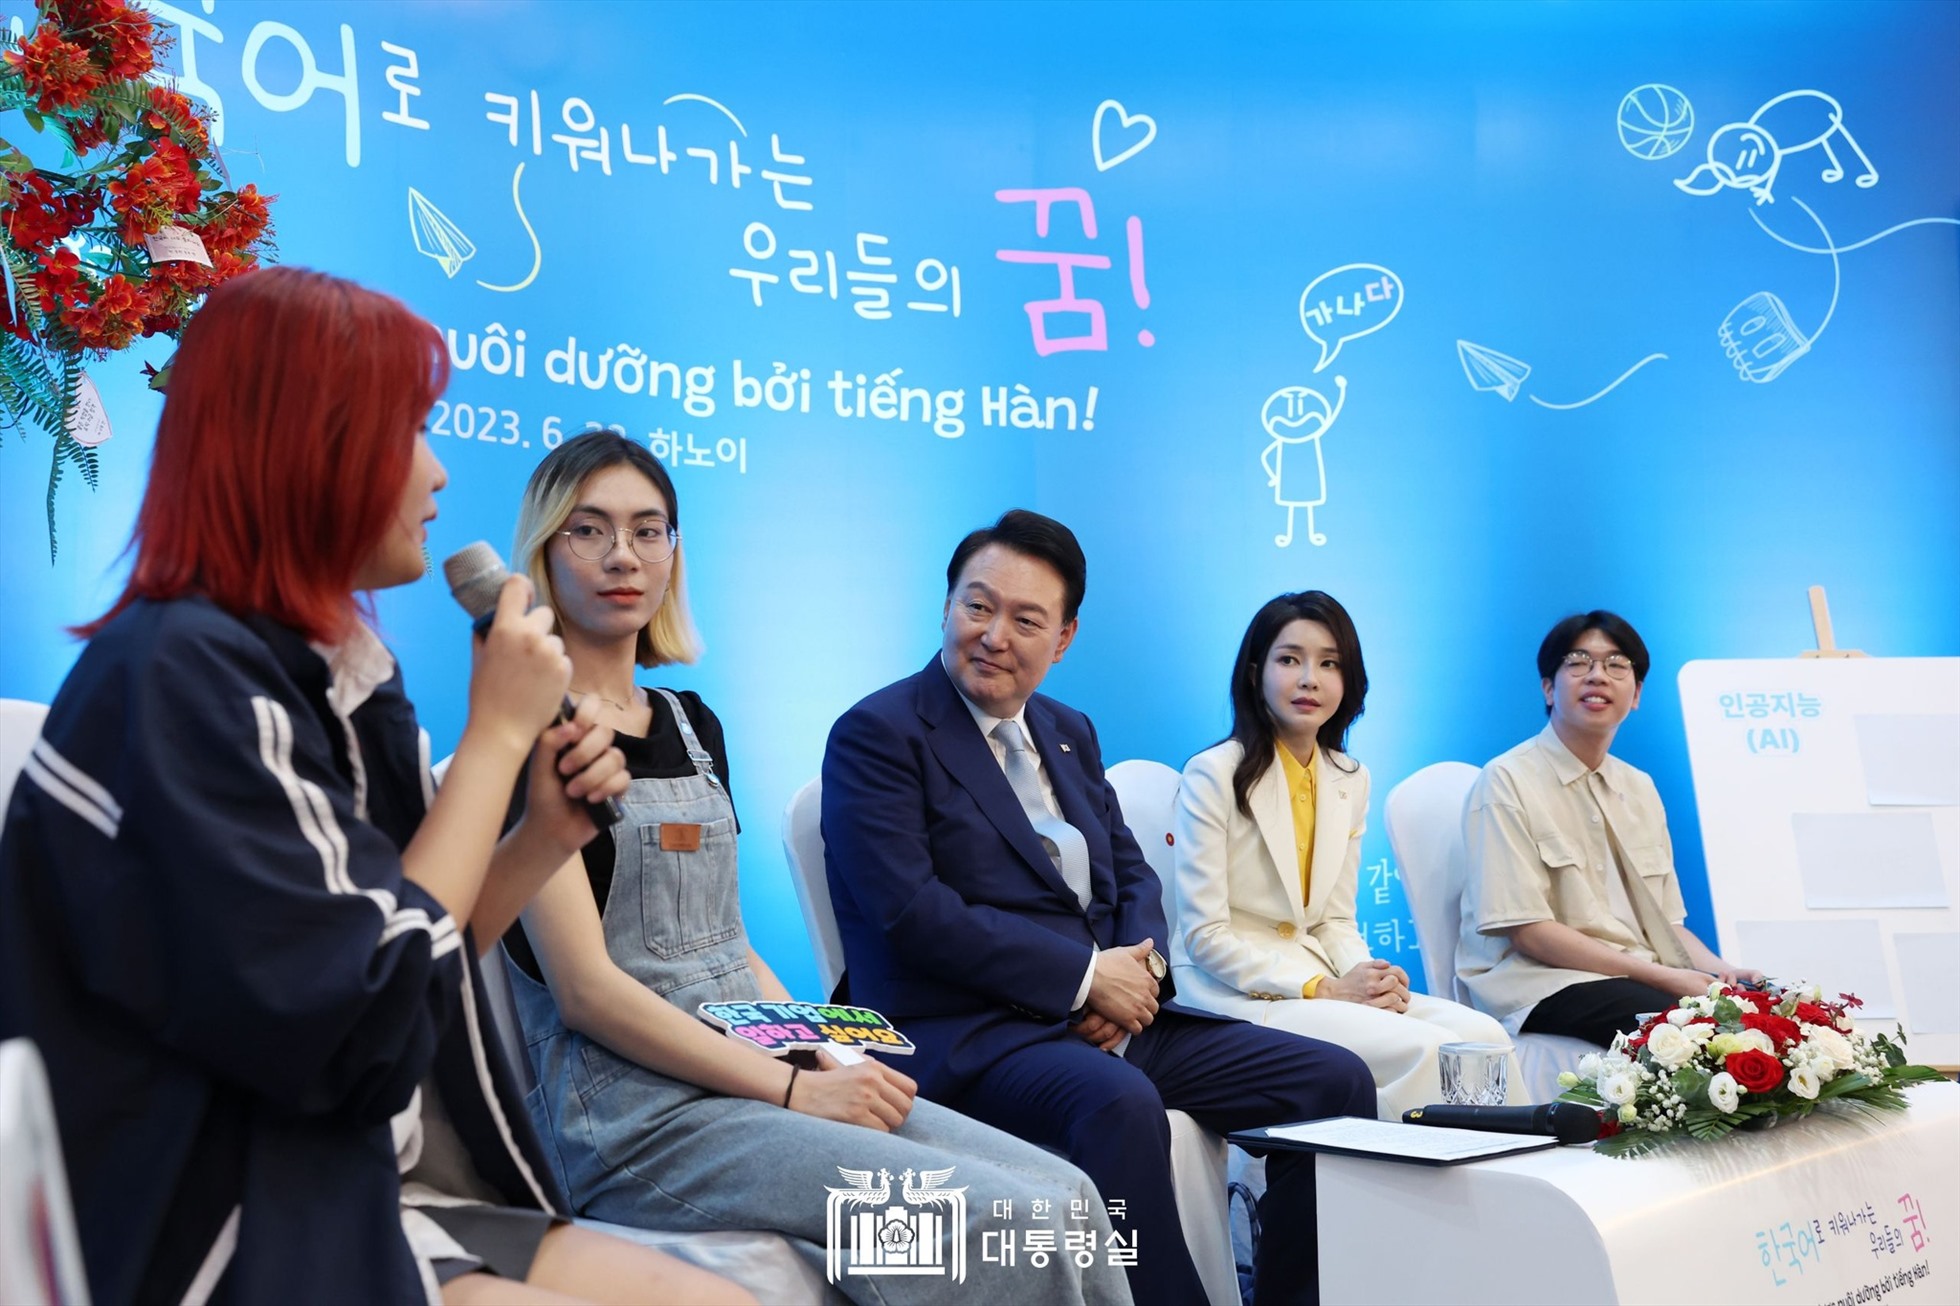 Tổng thống Hàn Quốc Yoon Suk Yeol và Phu nhân Kim Keon Hee đến thăm và nói chuyện với các sinh viên Khoa Ngôn ngữ và Văn hóa Hàn Quốc, Trường Đại học Ngoại ngữ (Đại học Quốc gia Hà Nội) ngày 22.6. Ảnh: Đại sứ quán Hàn Quốc